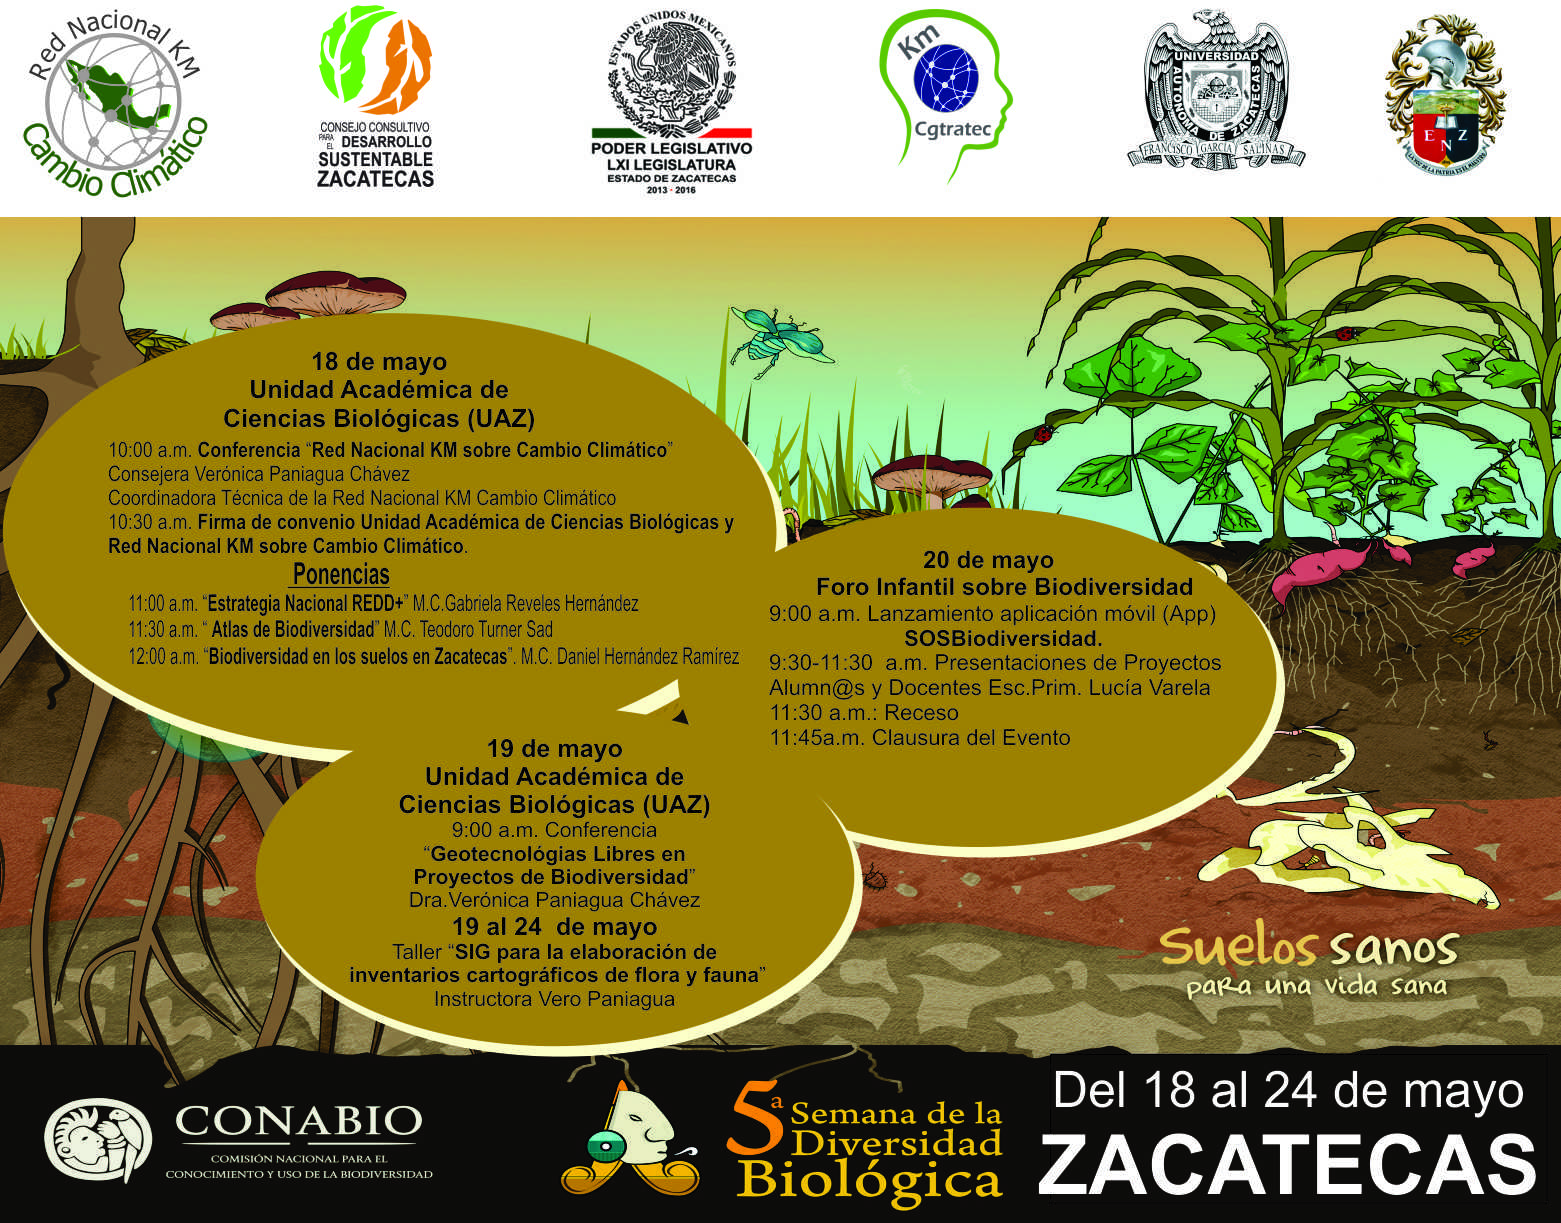 Consejo Consultivo para el Desarrollo Sustentable del Estado de Zacatecas